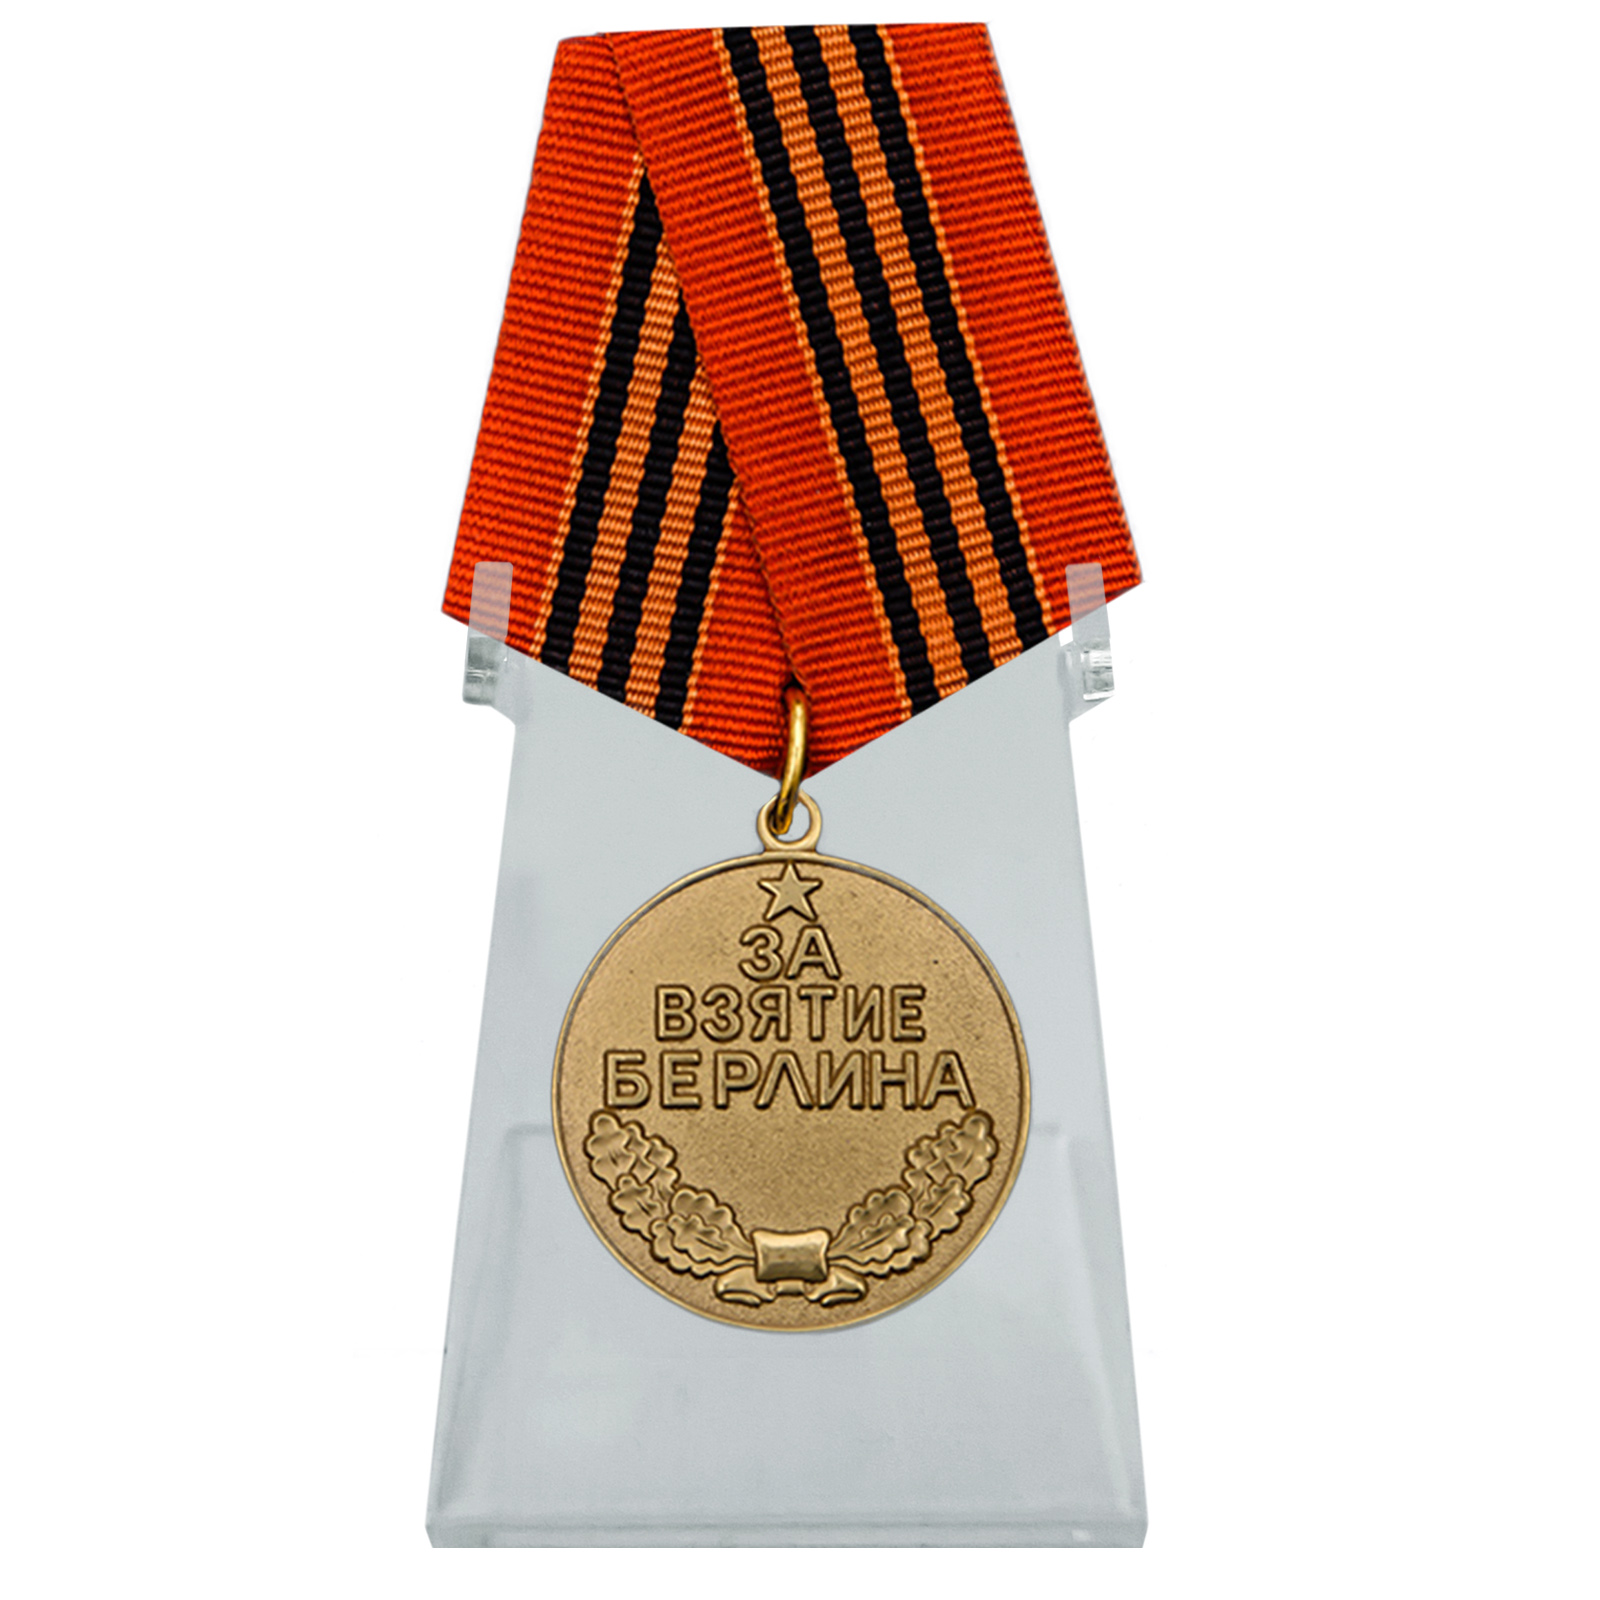 Советская медаль "За взятие Берлина"